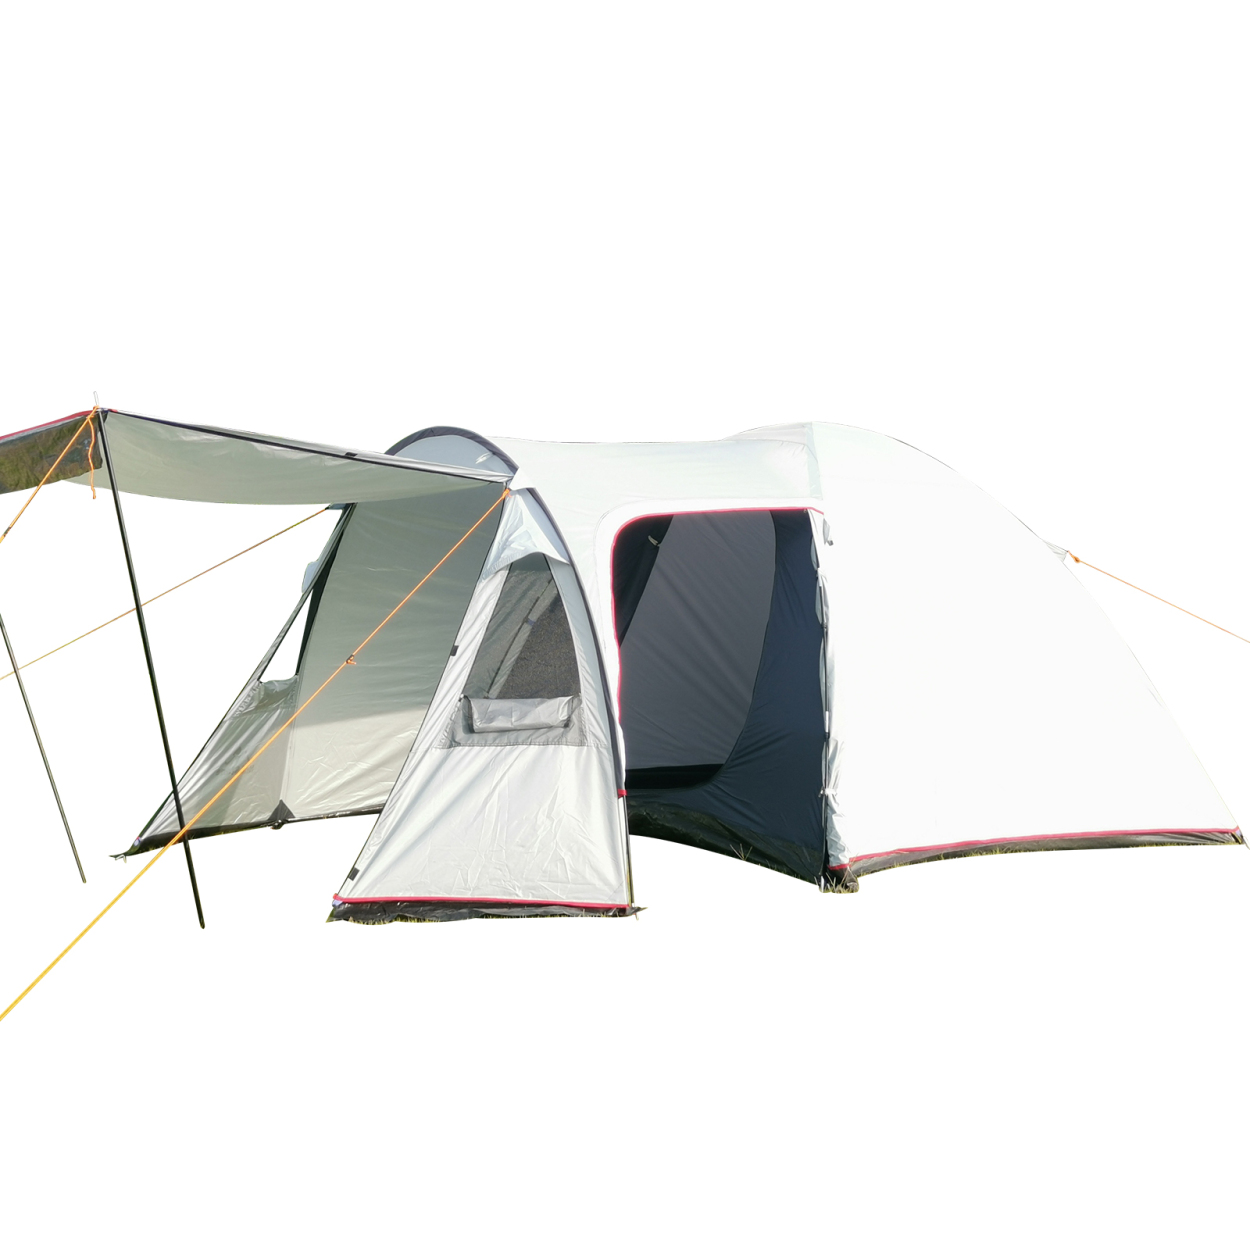 防災グッズ セット テント 4人用 キャンプ ツールームテント 2ルームテント てんと キャンプ用品 着替用テント シェルターテント 大型  着替えテント 前室 公園